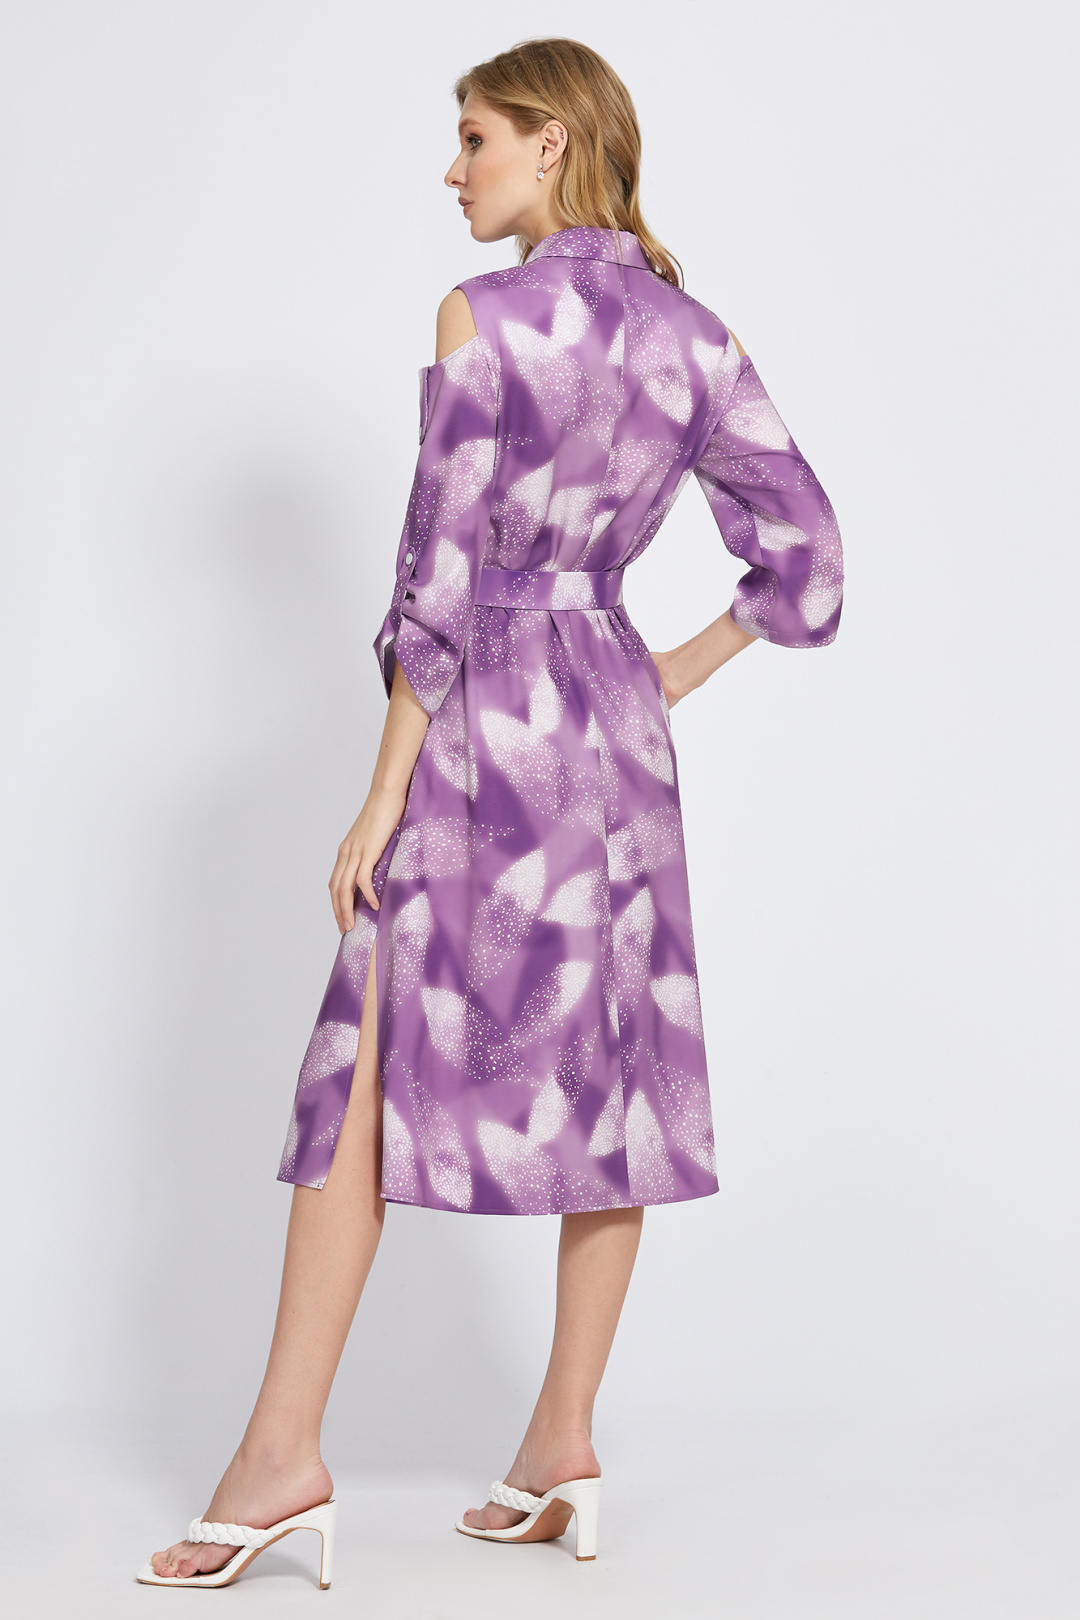 Платье Bazalini 4902 фиолетовый